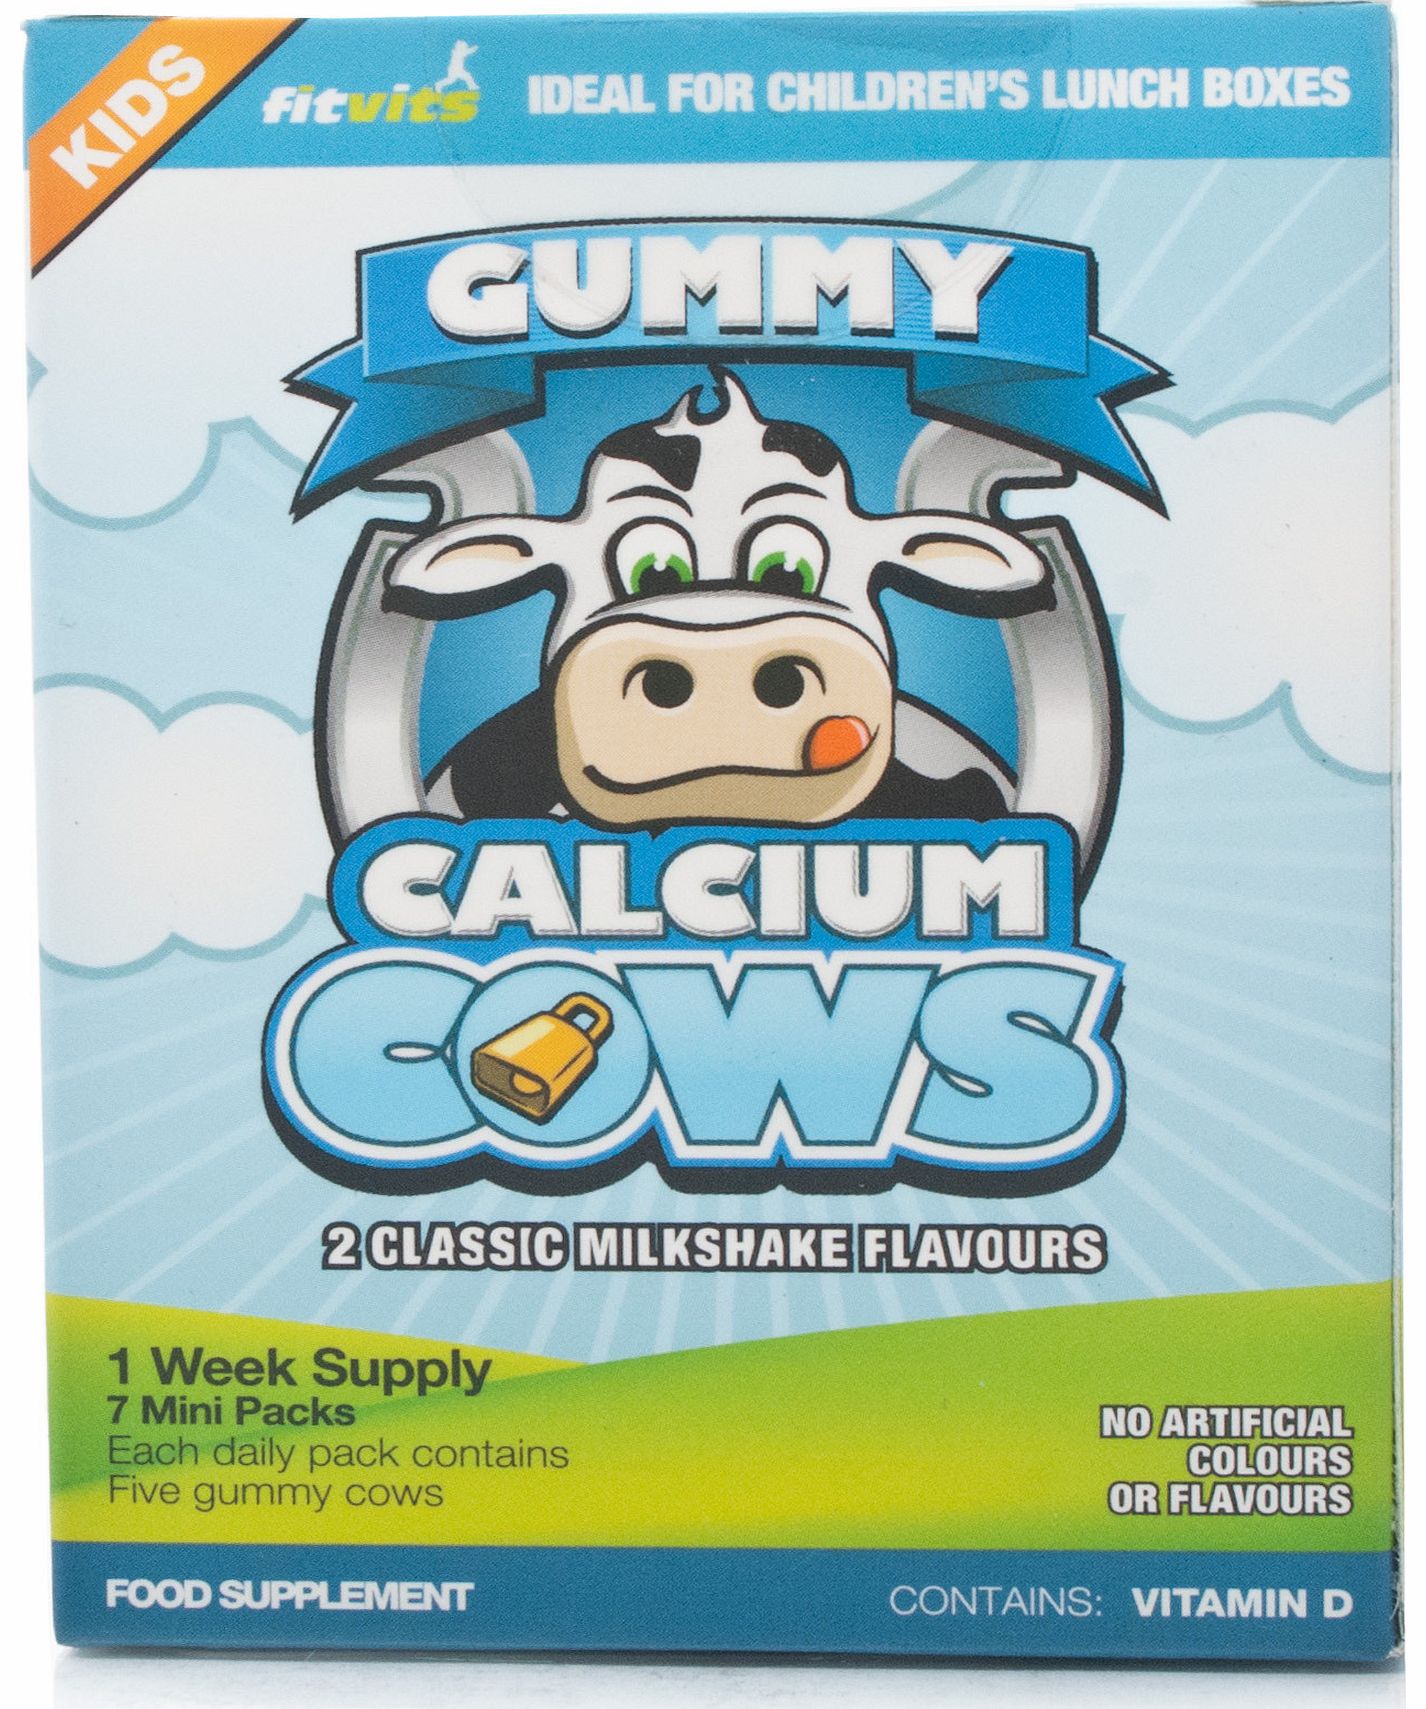 Fitvit Calcium Cows